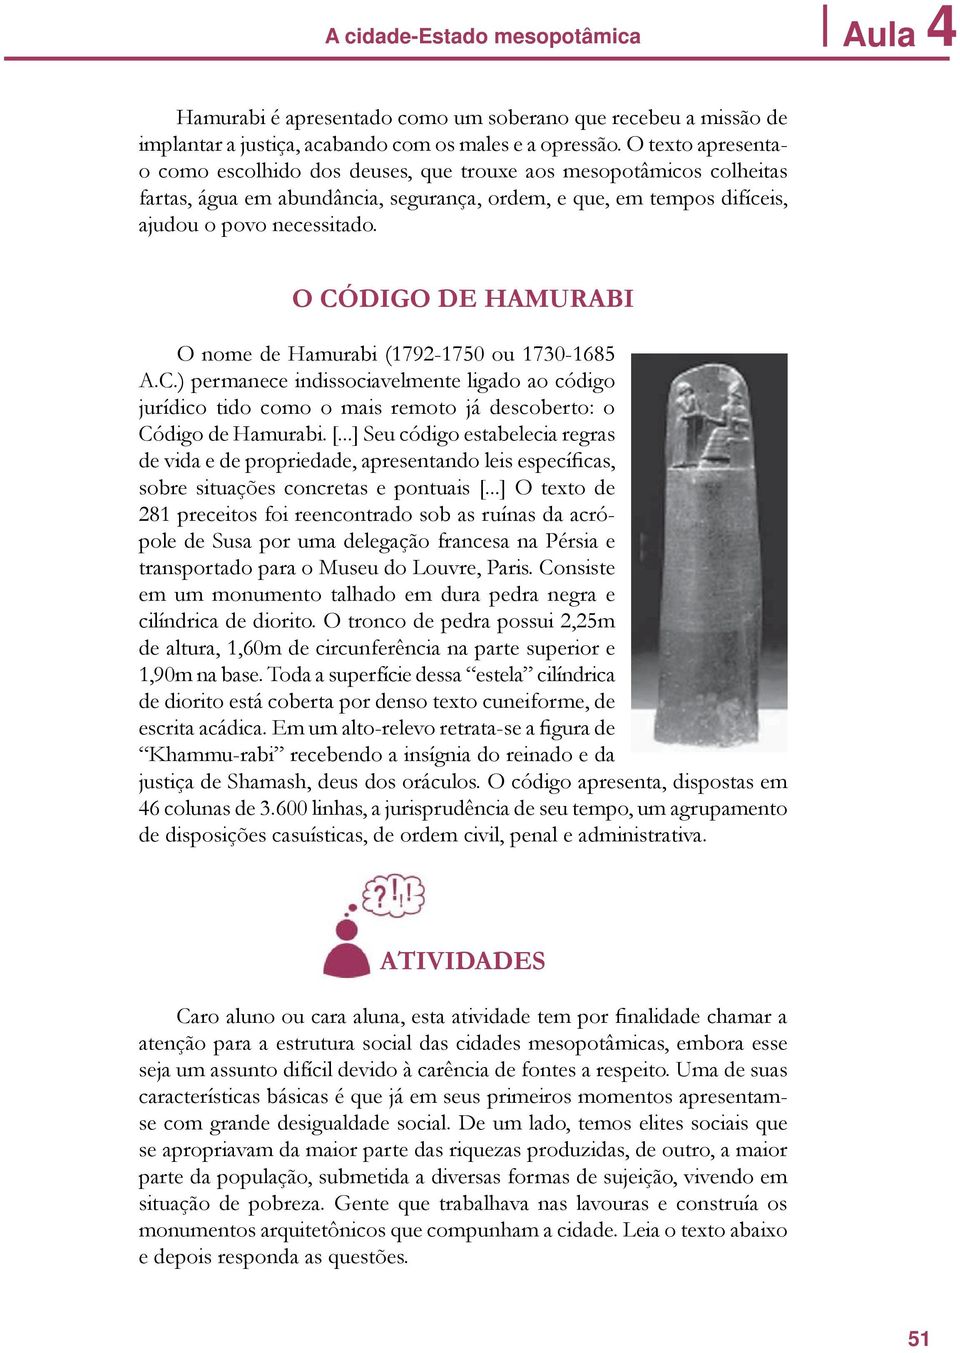 O CÓDIGO DE HAMURABI O nome de Hamurabi (1792-1750 ou 1730-1685 A.C.) permanece indissociavelmente ligado ao código jurídico tido como o mais remoto já descoberto: o Código de Hamurabi. [.